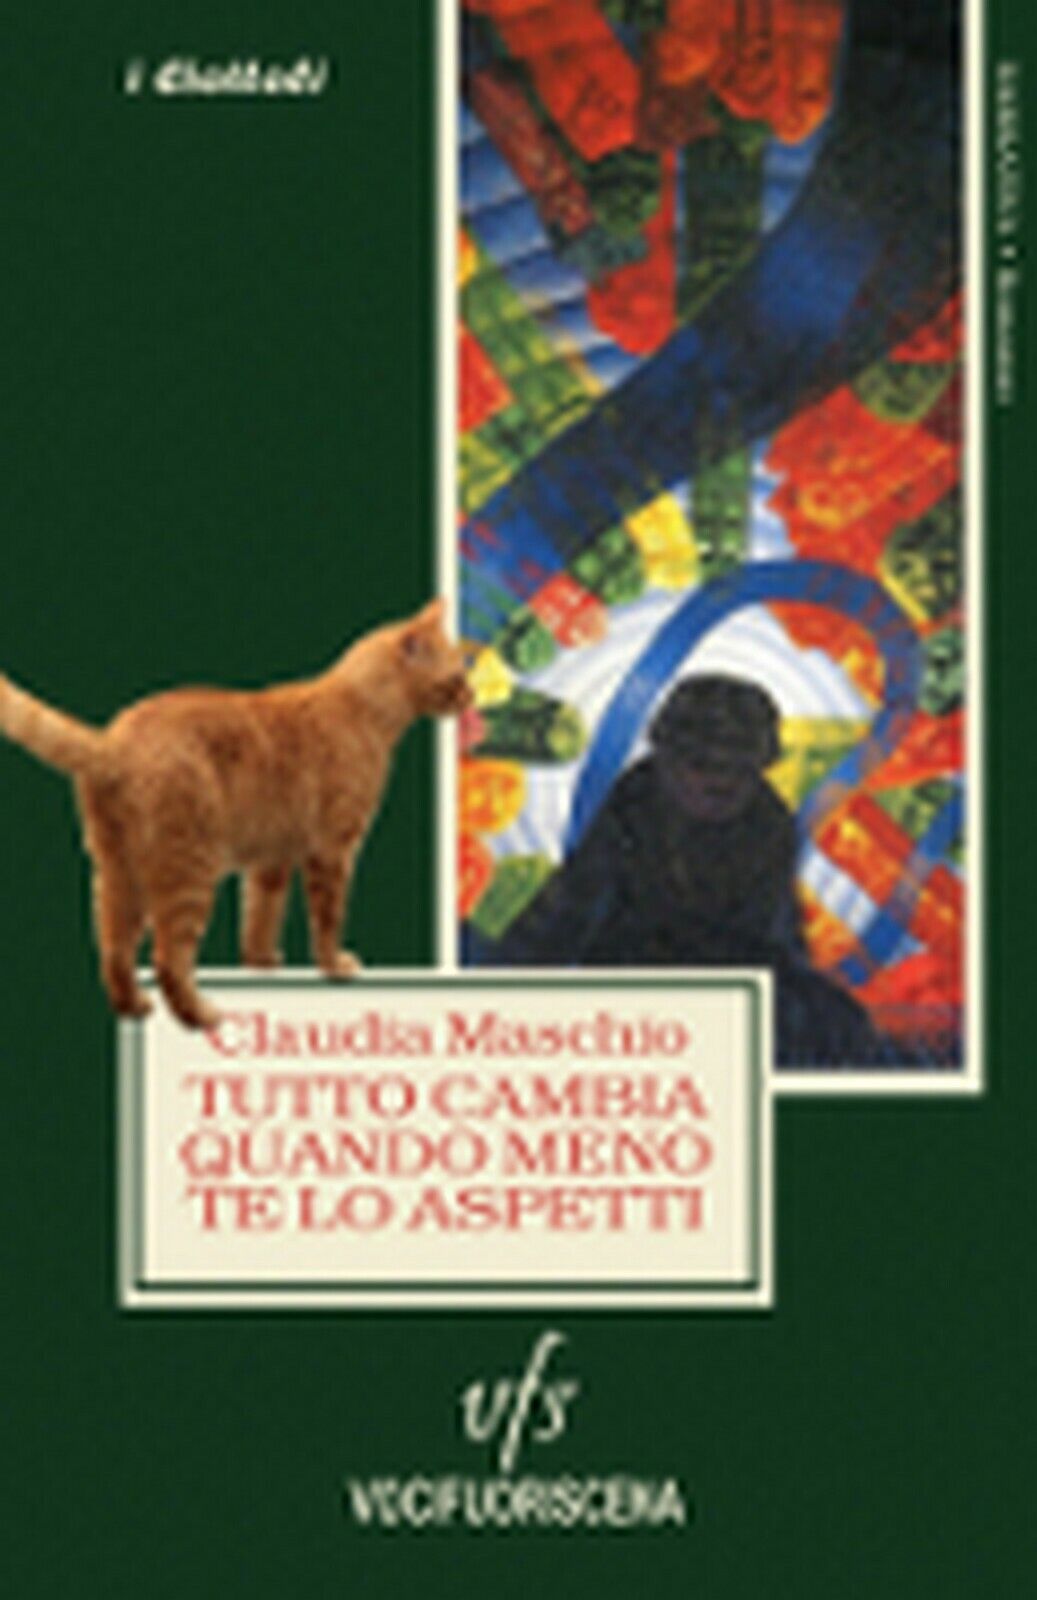 TUTTO CAMBIA QUANDO MENO TE LO ASPETTI  di Claudia Maschio,  2018,  Vocifuorisce libro usato